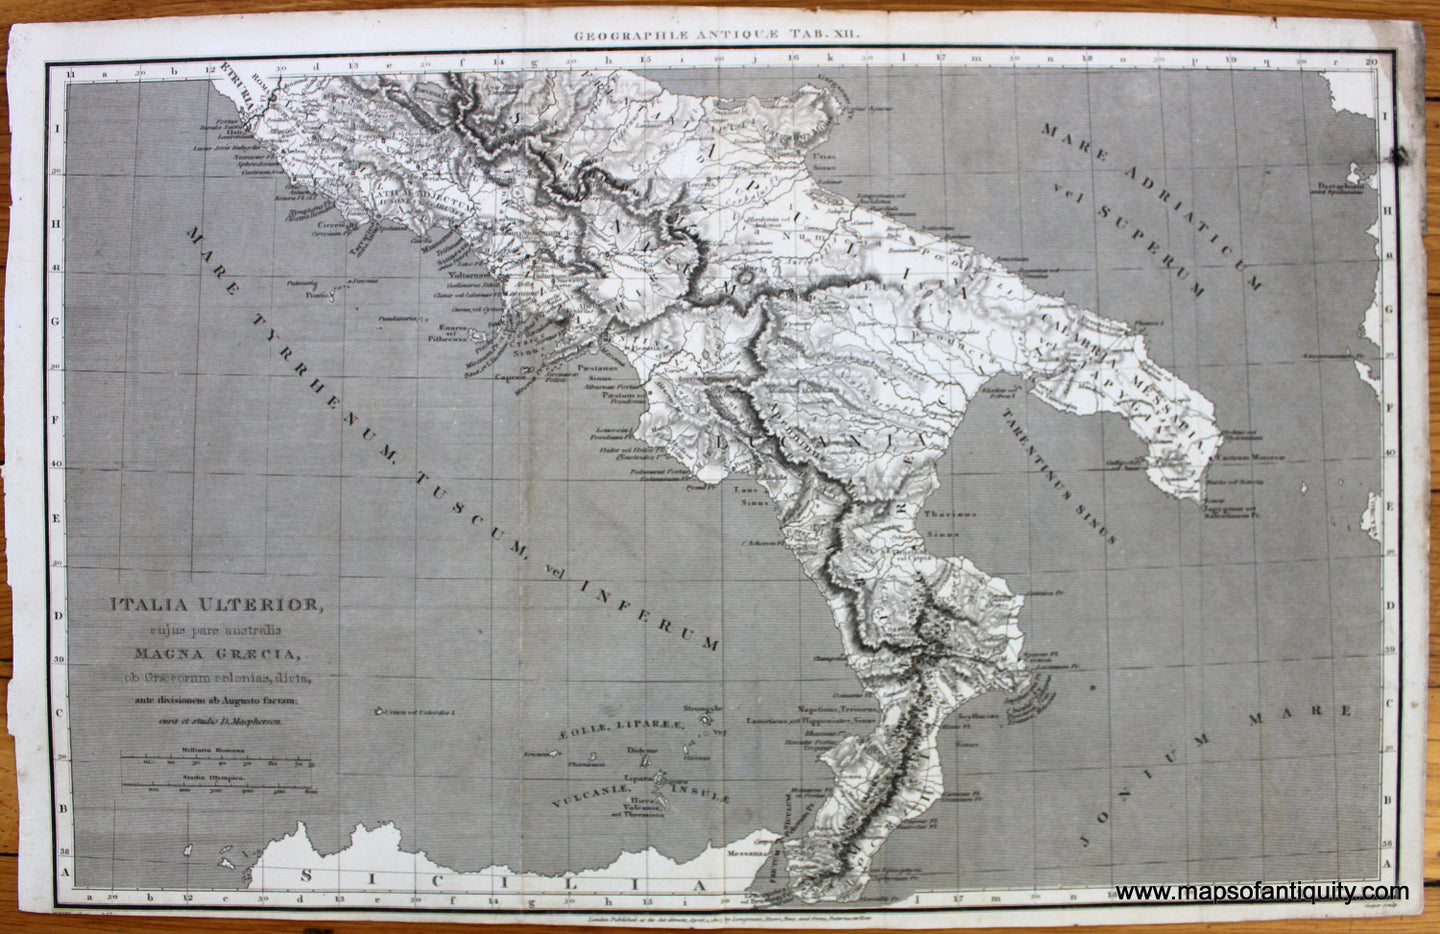 Antique-Uncolored-Map-Italia-Ulterior-cujus-pars-australis-Magna-Graecia-ob-Graecorum-colonias-dieta-ante-divisionem-ab-Augusto-factam-Europe-Italy-1807-Longman-Hurst-Rees-&-Orme-Maps-Of-Antiquity